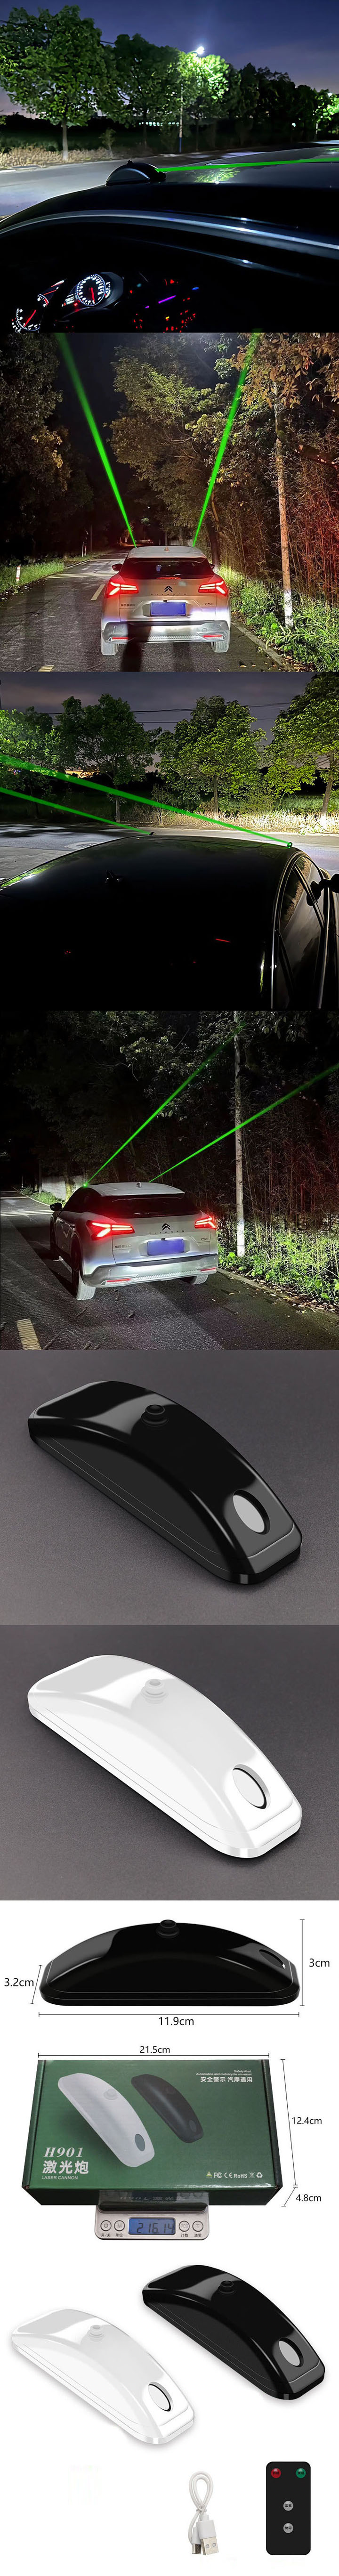 Laser vert pour éviter collisions arrière